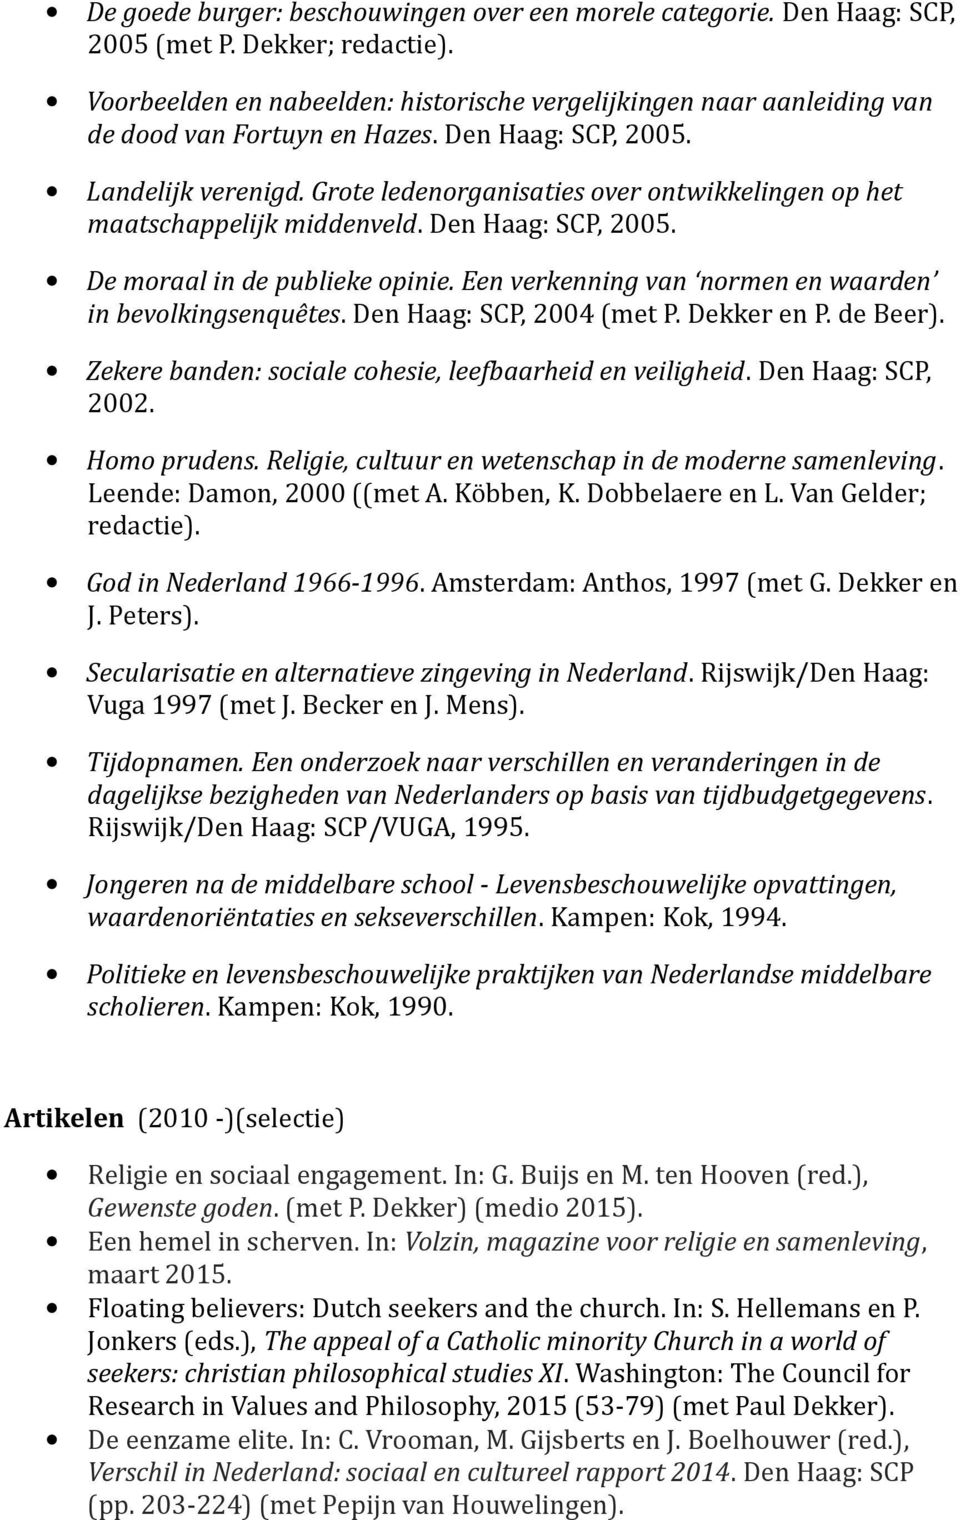 Grote ledenorganisaties over ontwikkelingen op het maatschappelijk middenveld. Den Haag: SCP, 2005. De moraal in de publieke opinie. Een verkenning van normen en waarden in bevolkingsenquêtes.